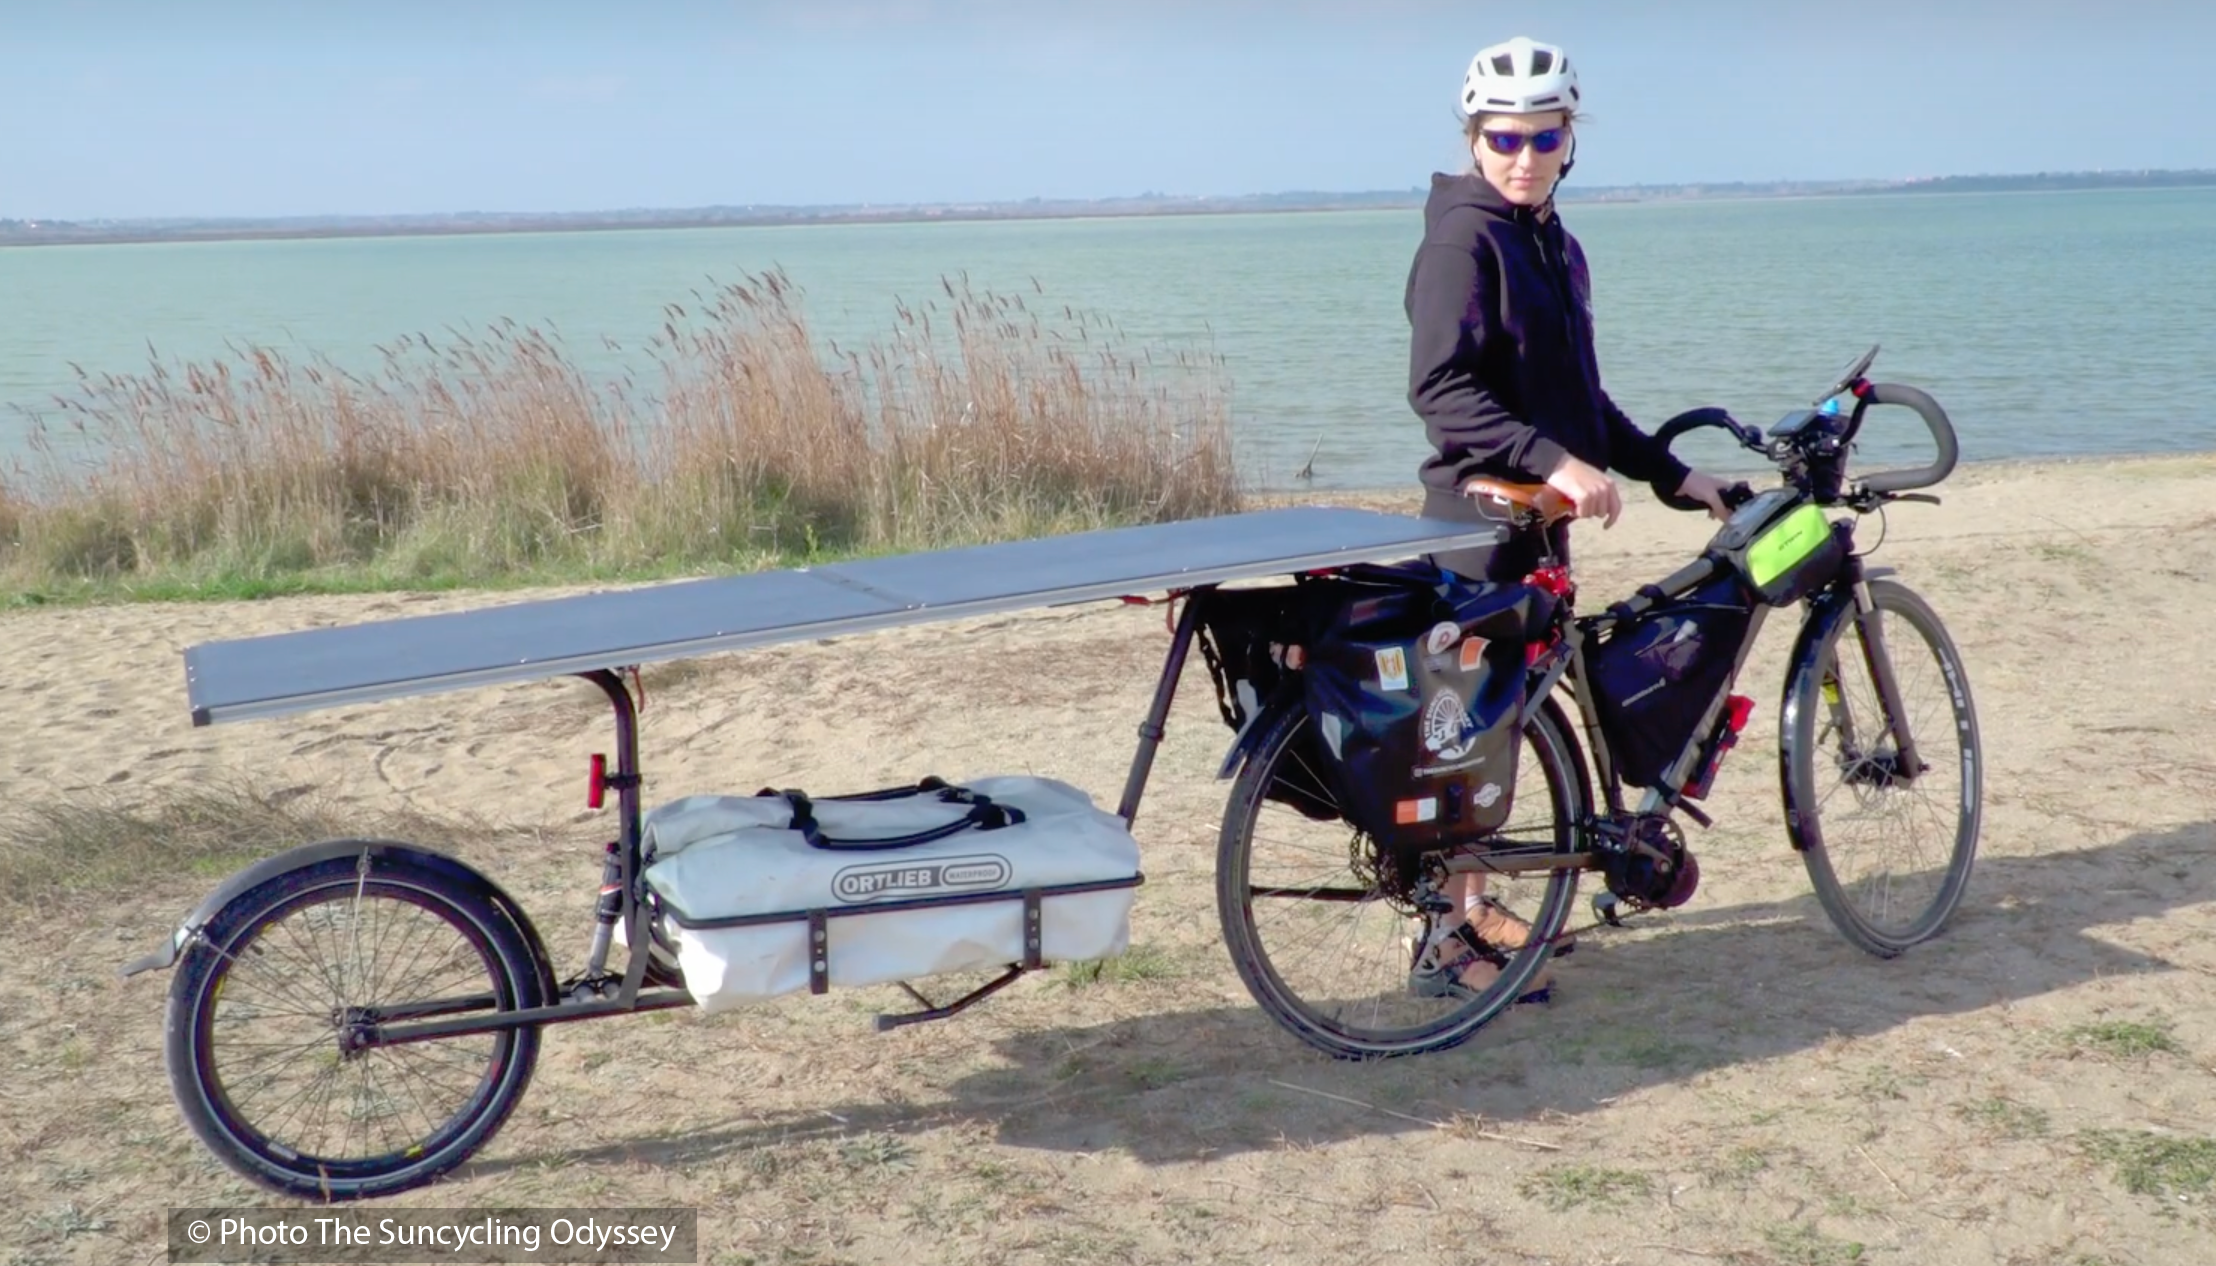 Fiona Colantuono achève son expédition de 8800 km à vélo solaire à Lyon